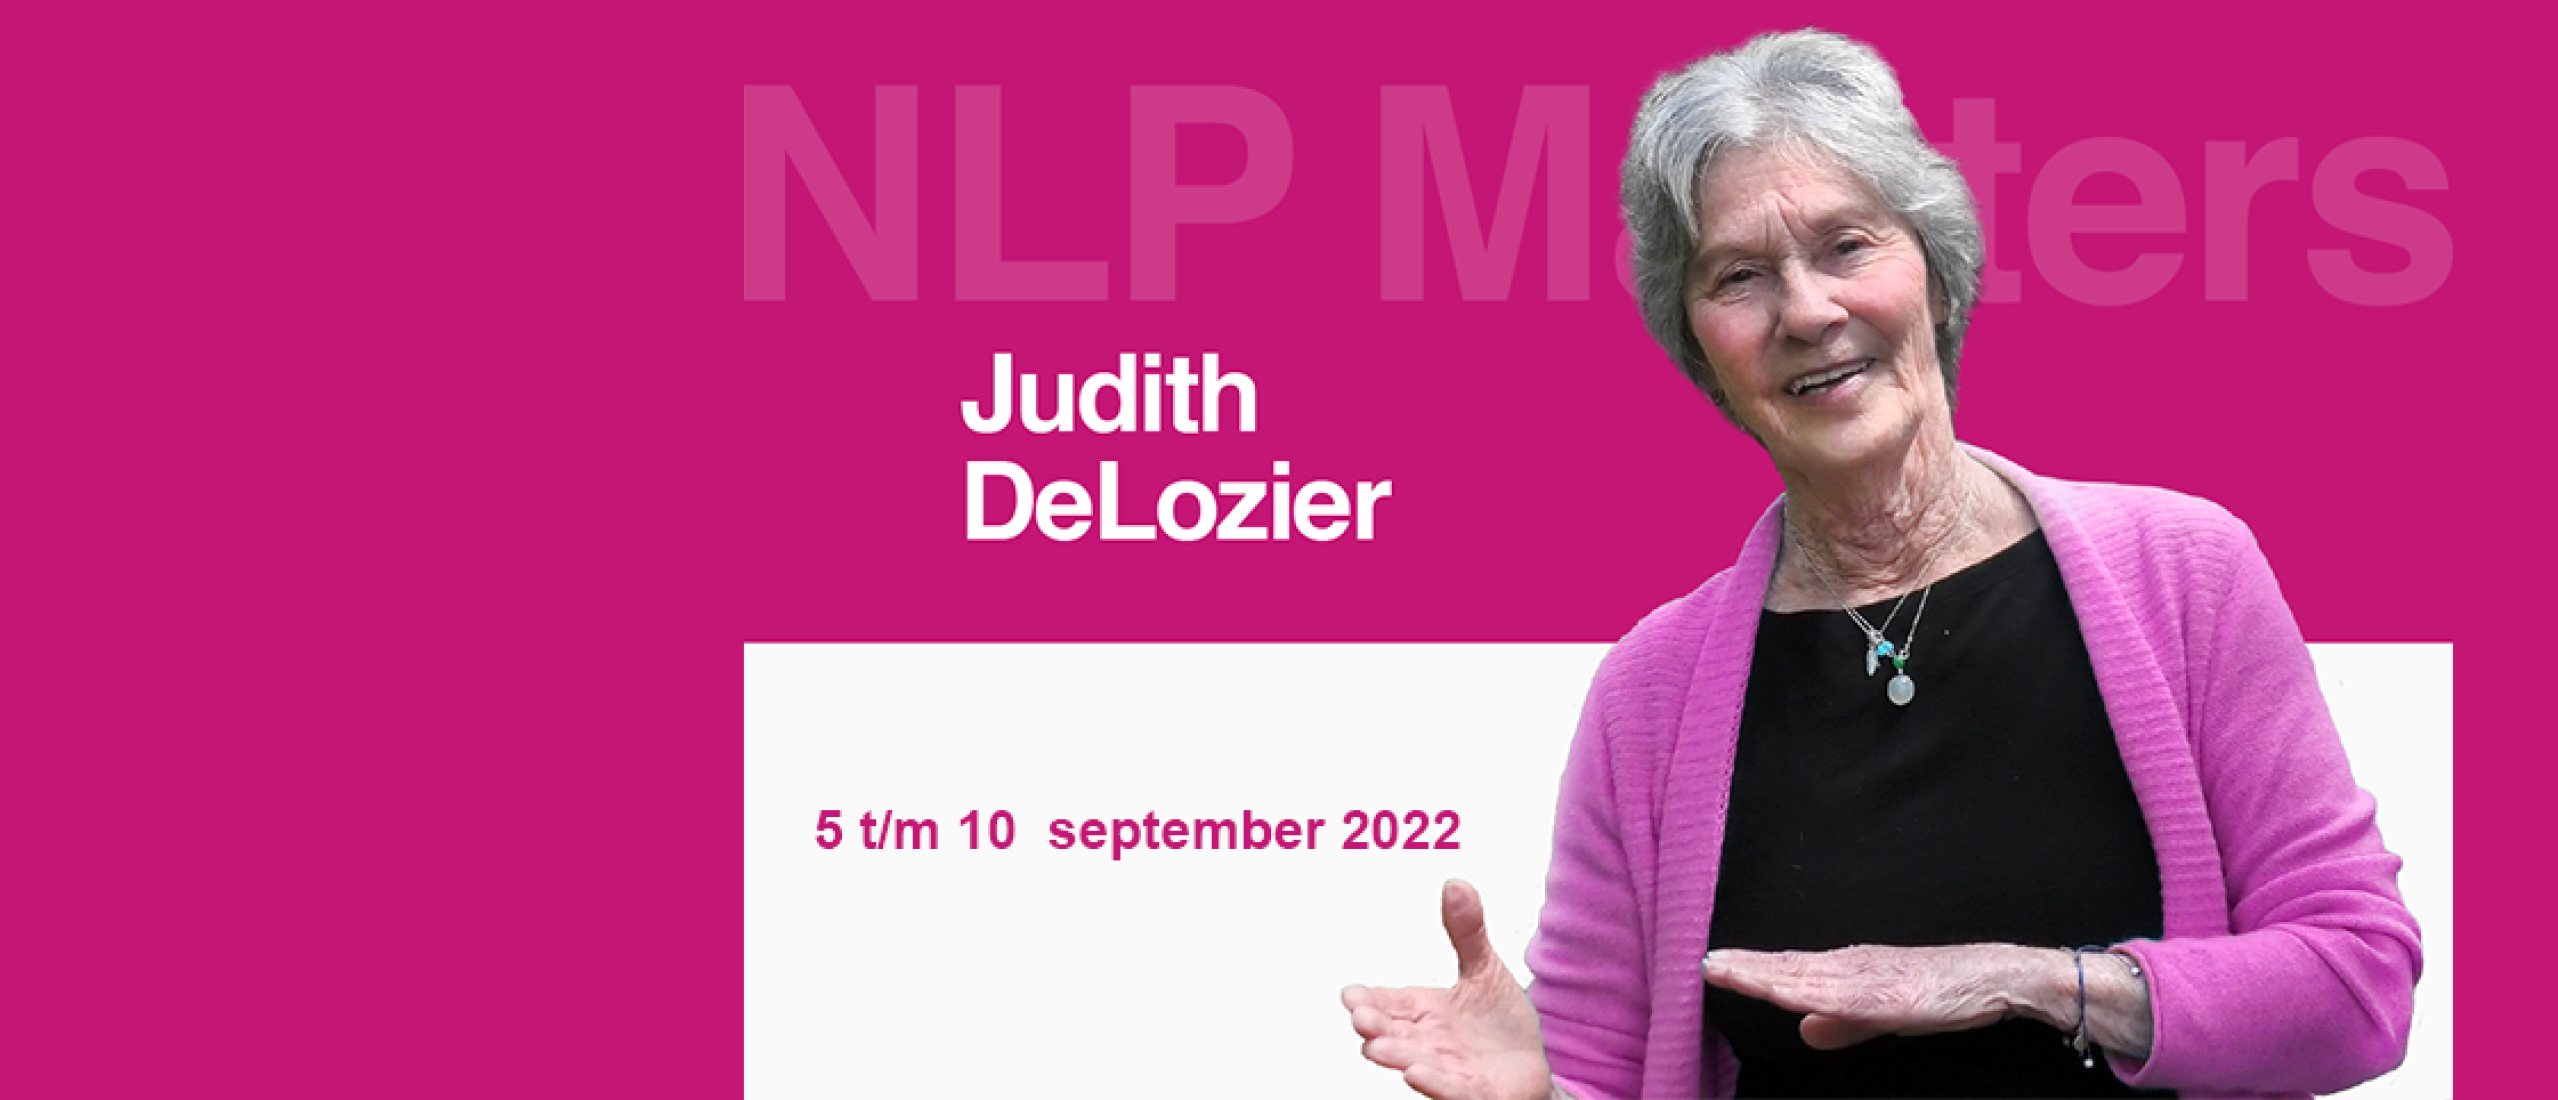 Internationale training met Judith DeLozier